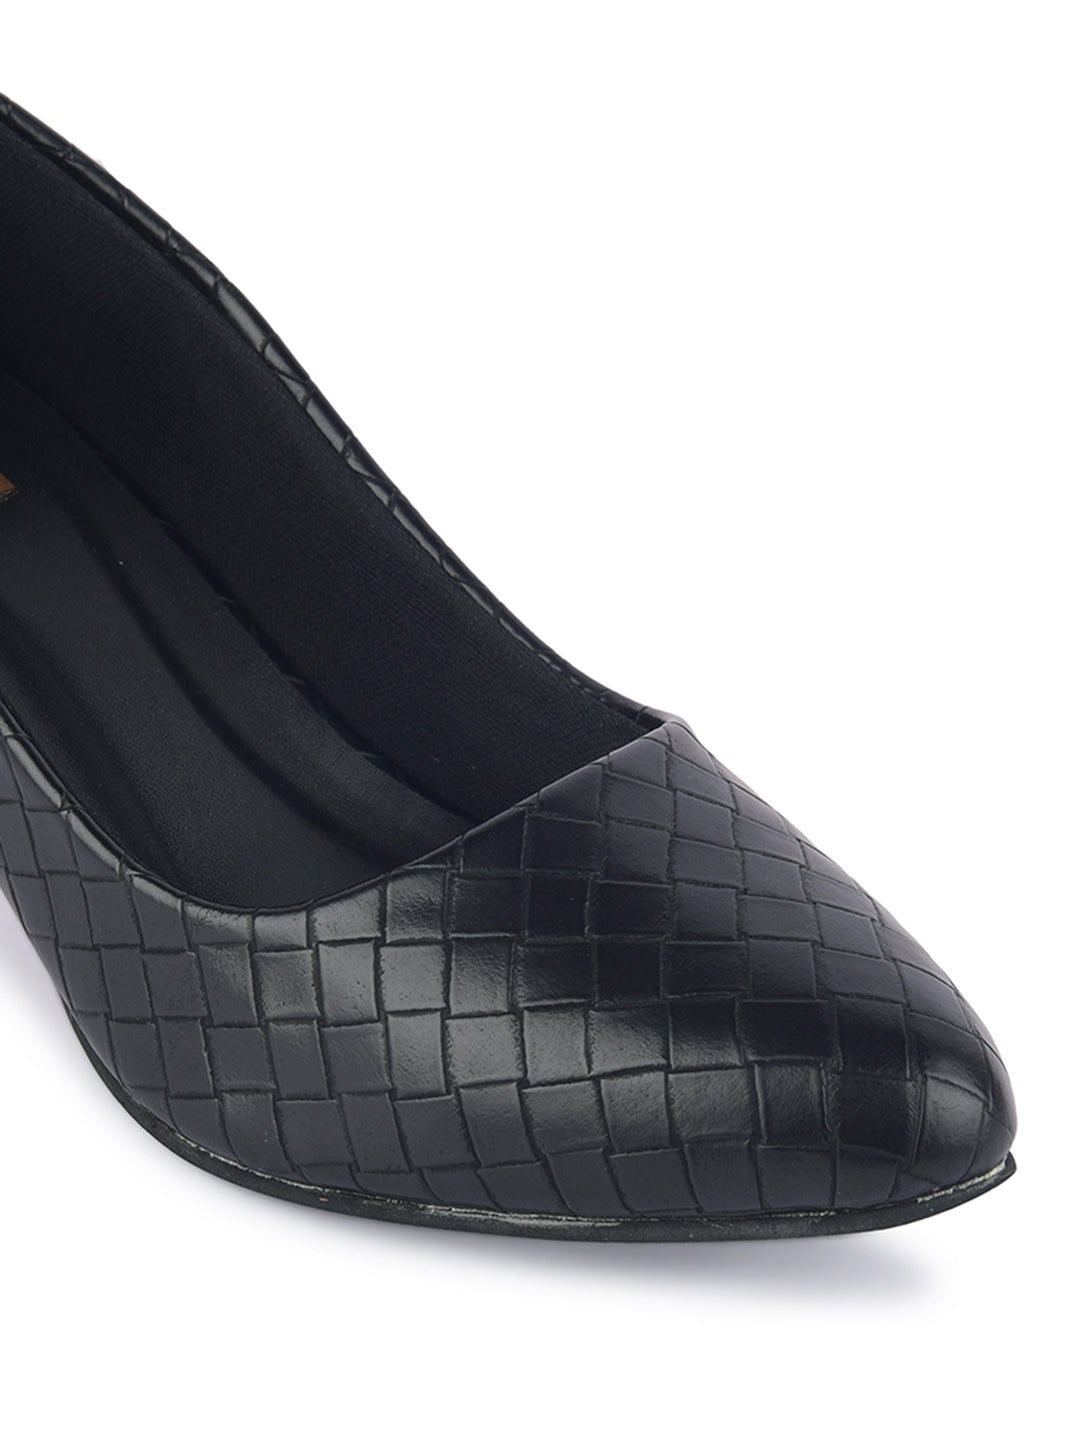 Fashion Ladies Pointed High Heels-Black | Jumia Nigeria